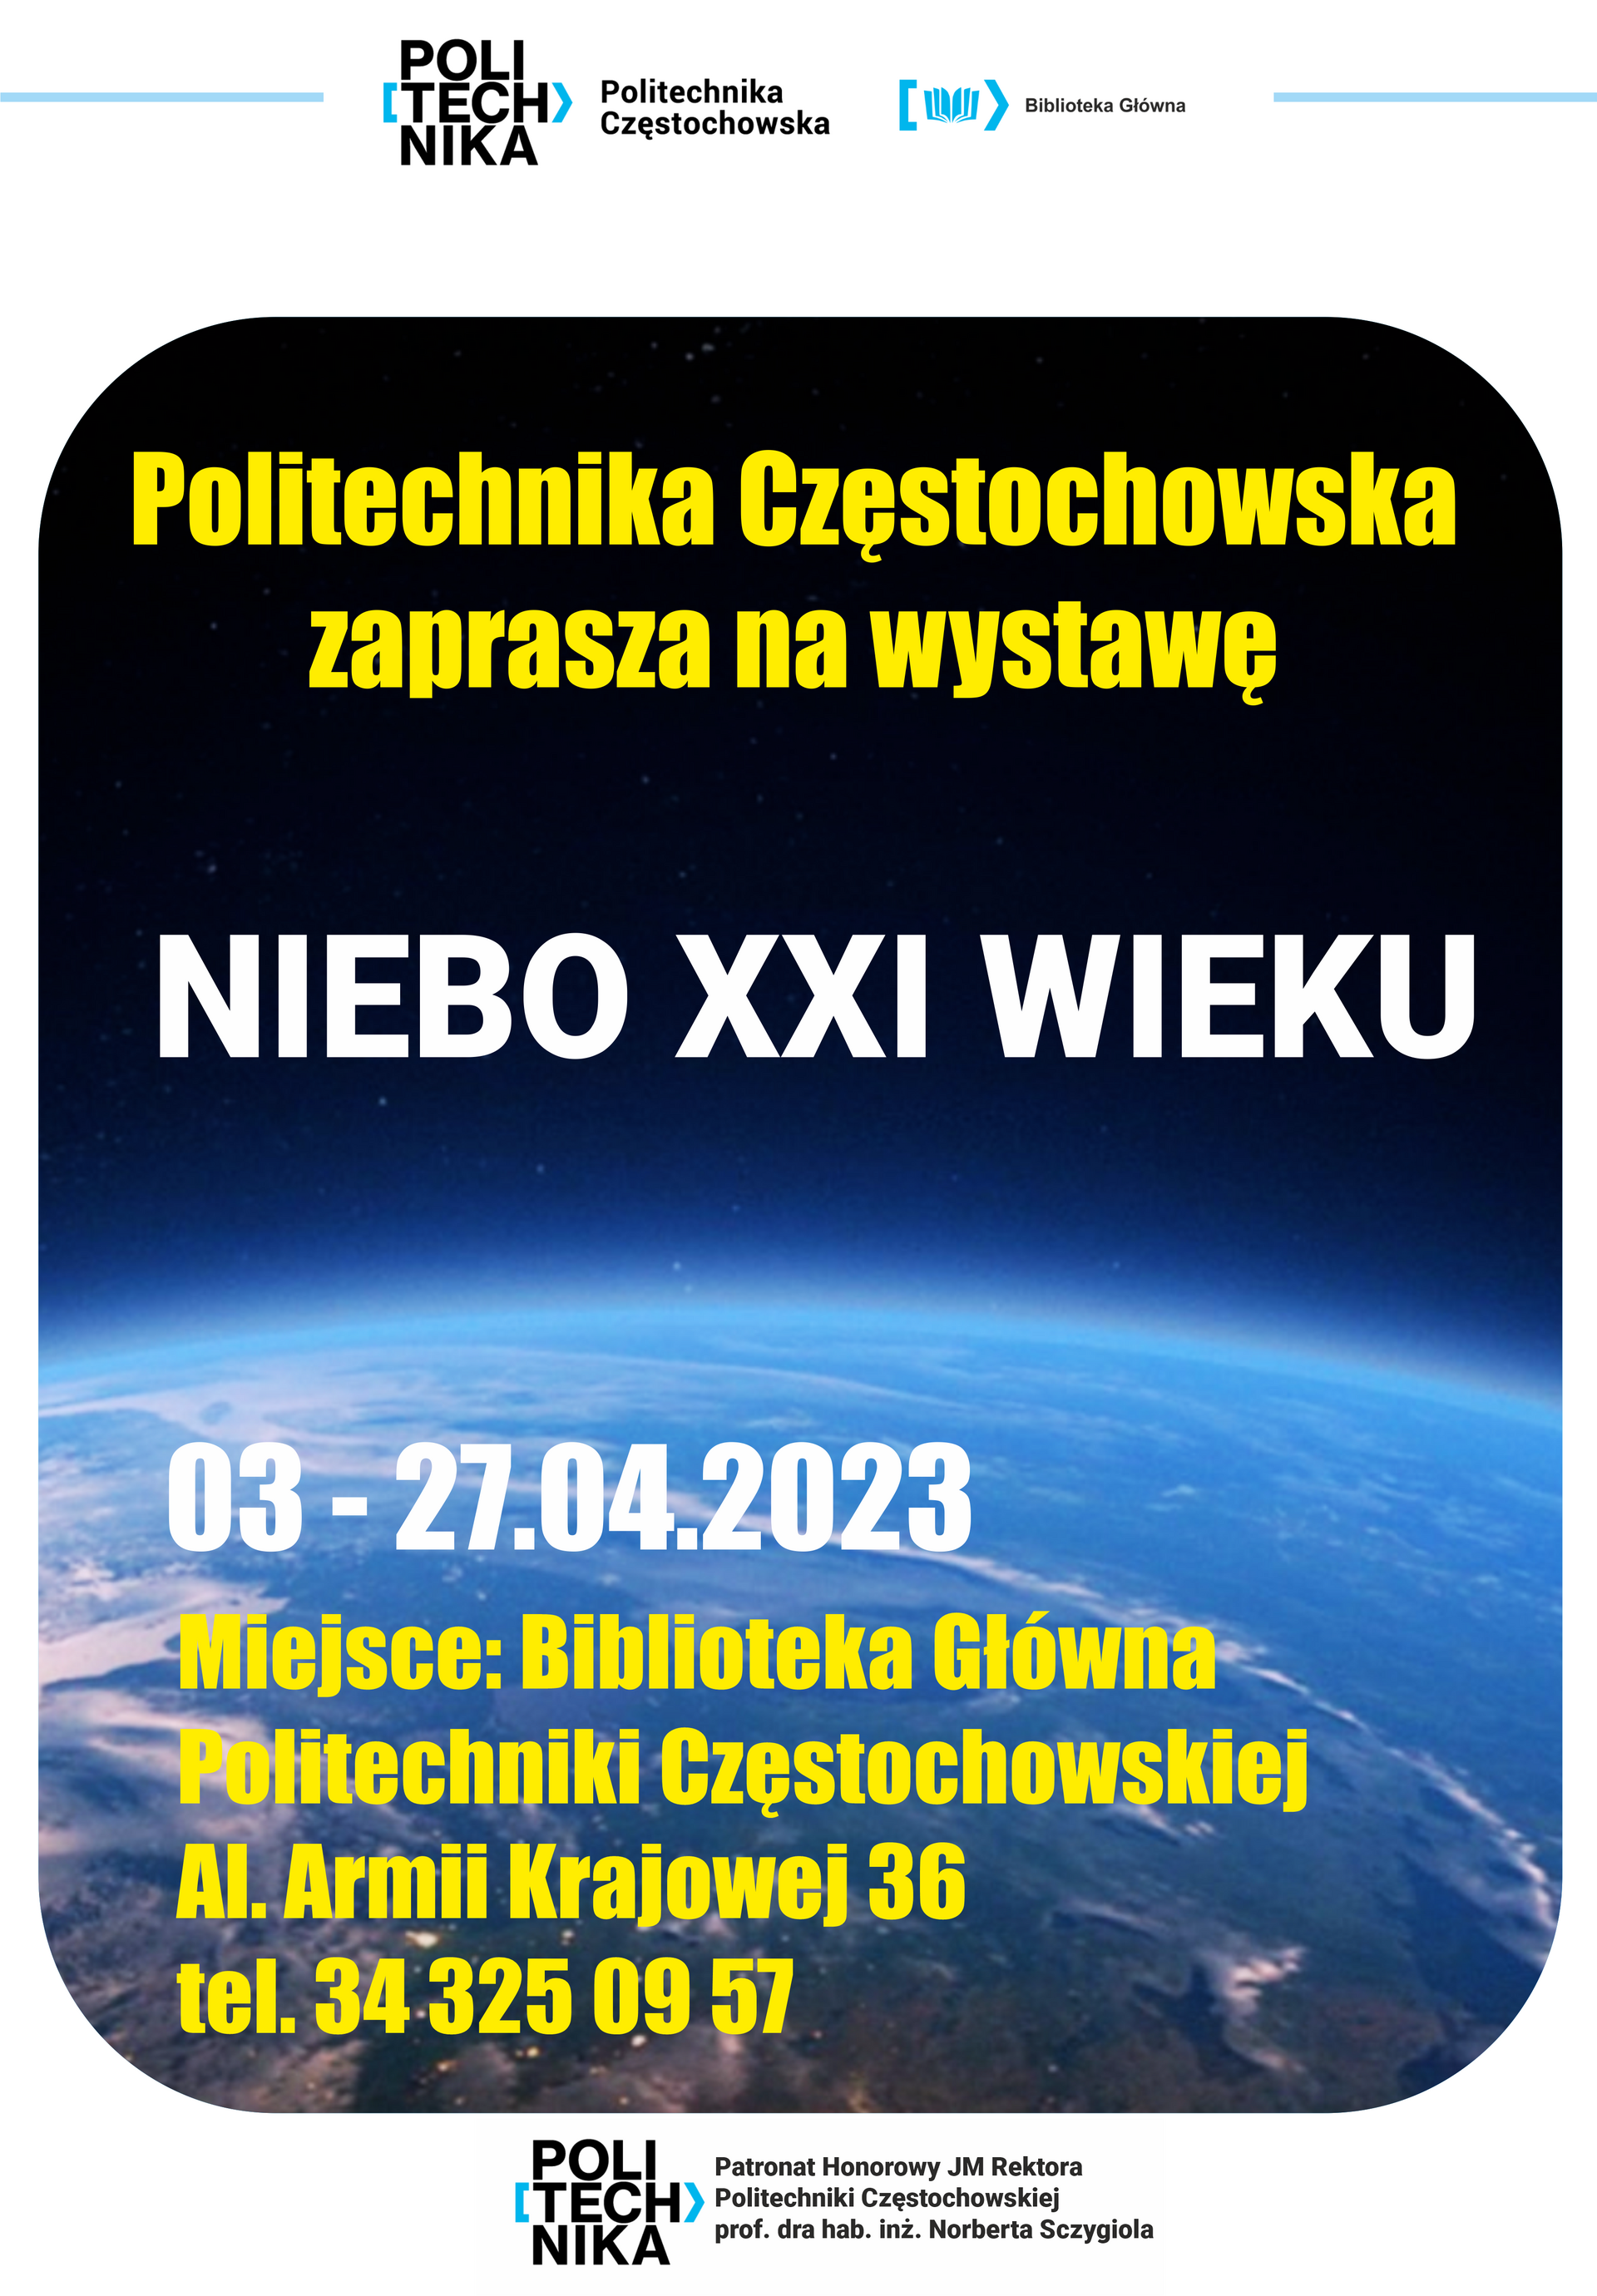 Politechnika Częstochowska zaprasza na wystawę „Niebo XXI wieku”, która odbędzie się w dniach 3-27 kwietnia 2023 r. w Bibliotece Głównej Politechniki Częstochowskiej – II piętro.